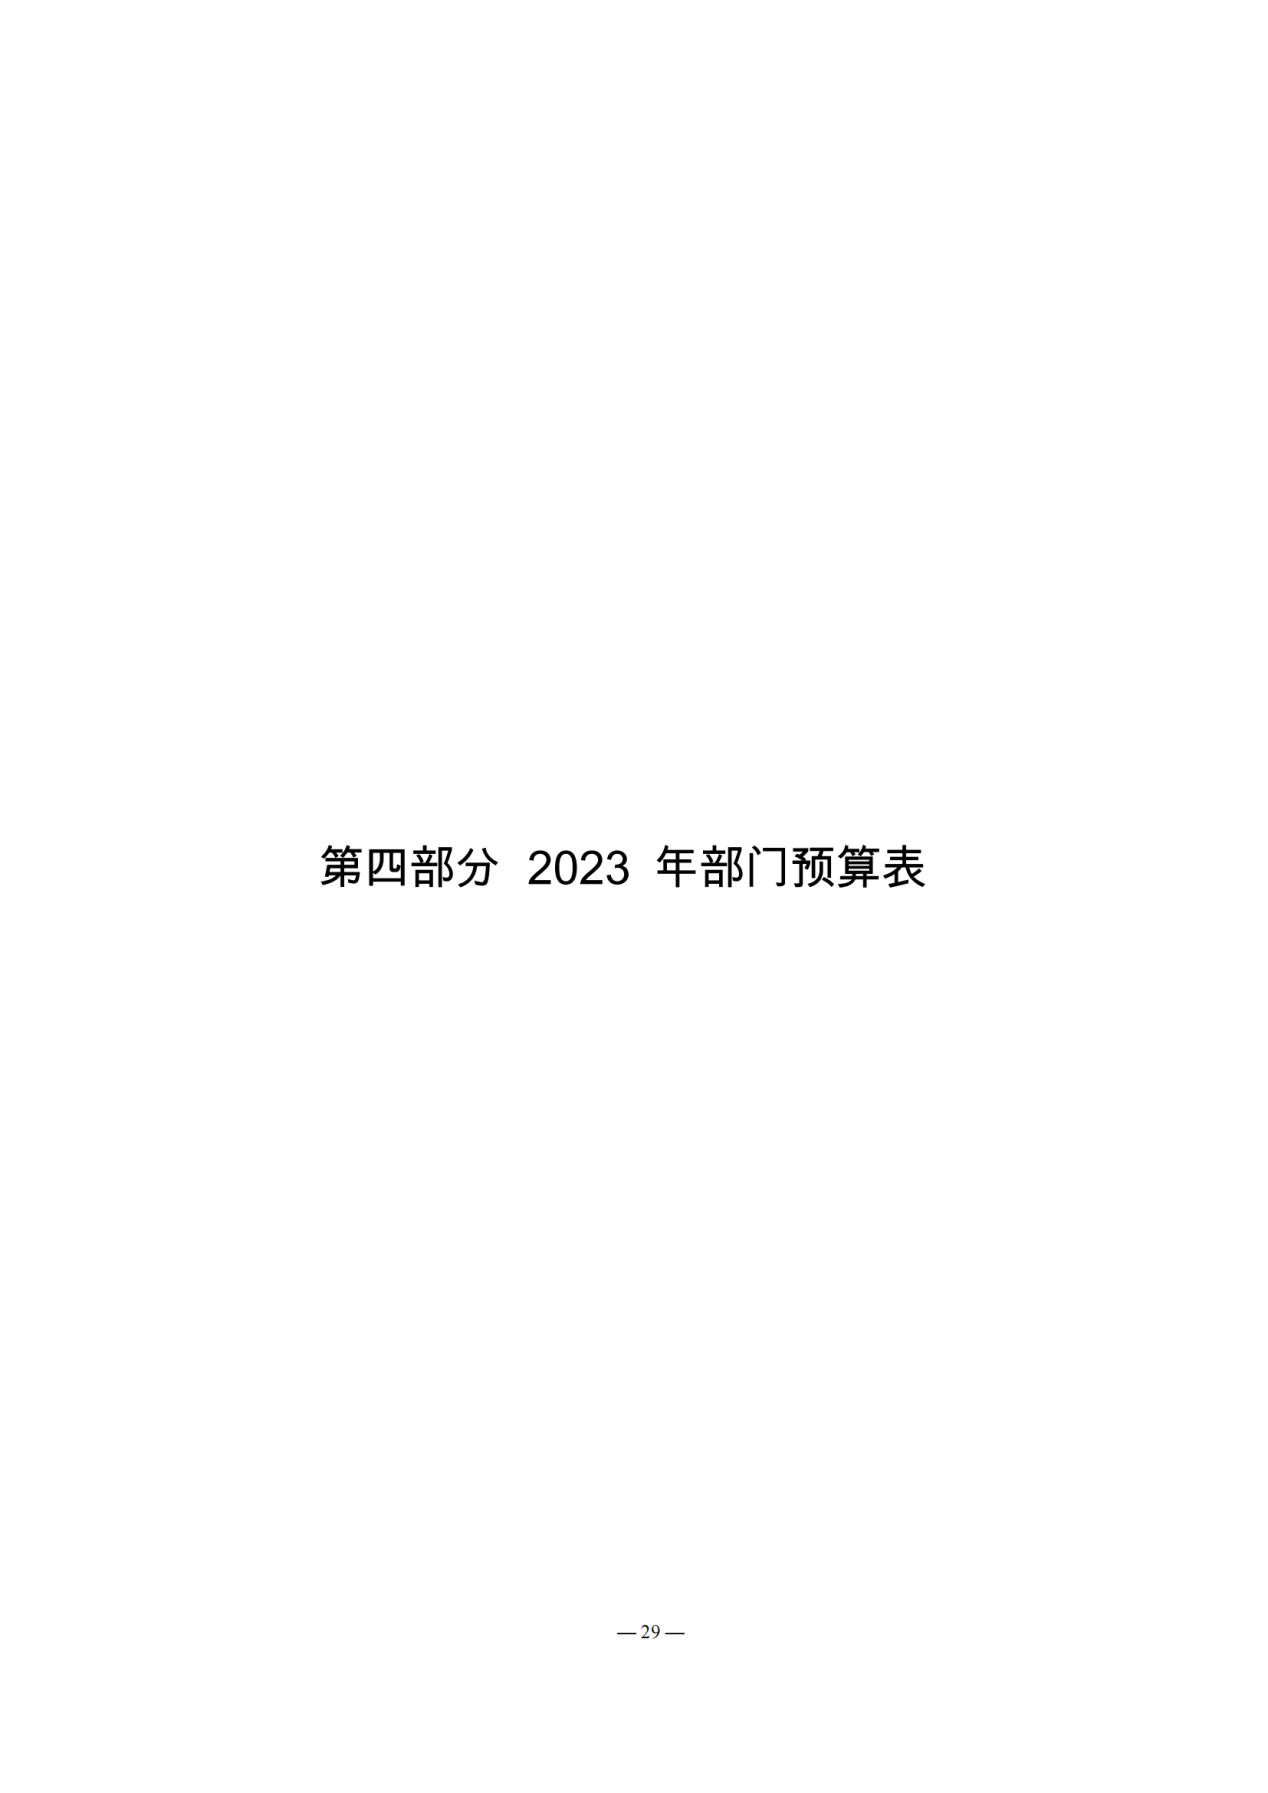 成都市温江区光华馨城中学校2023年预算公开_28